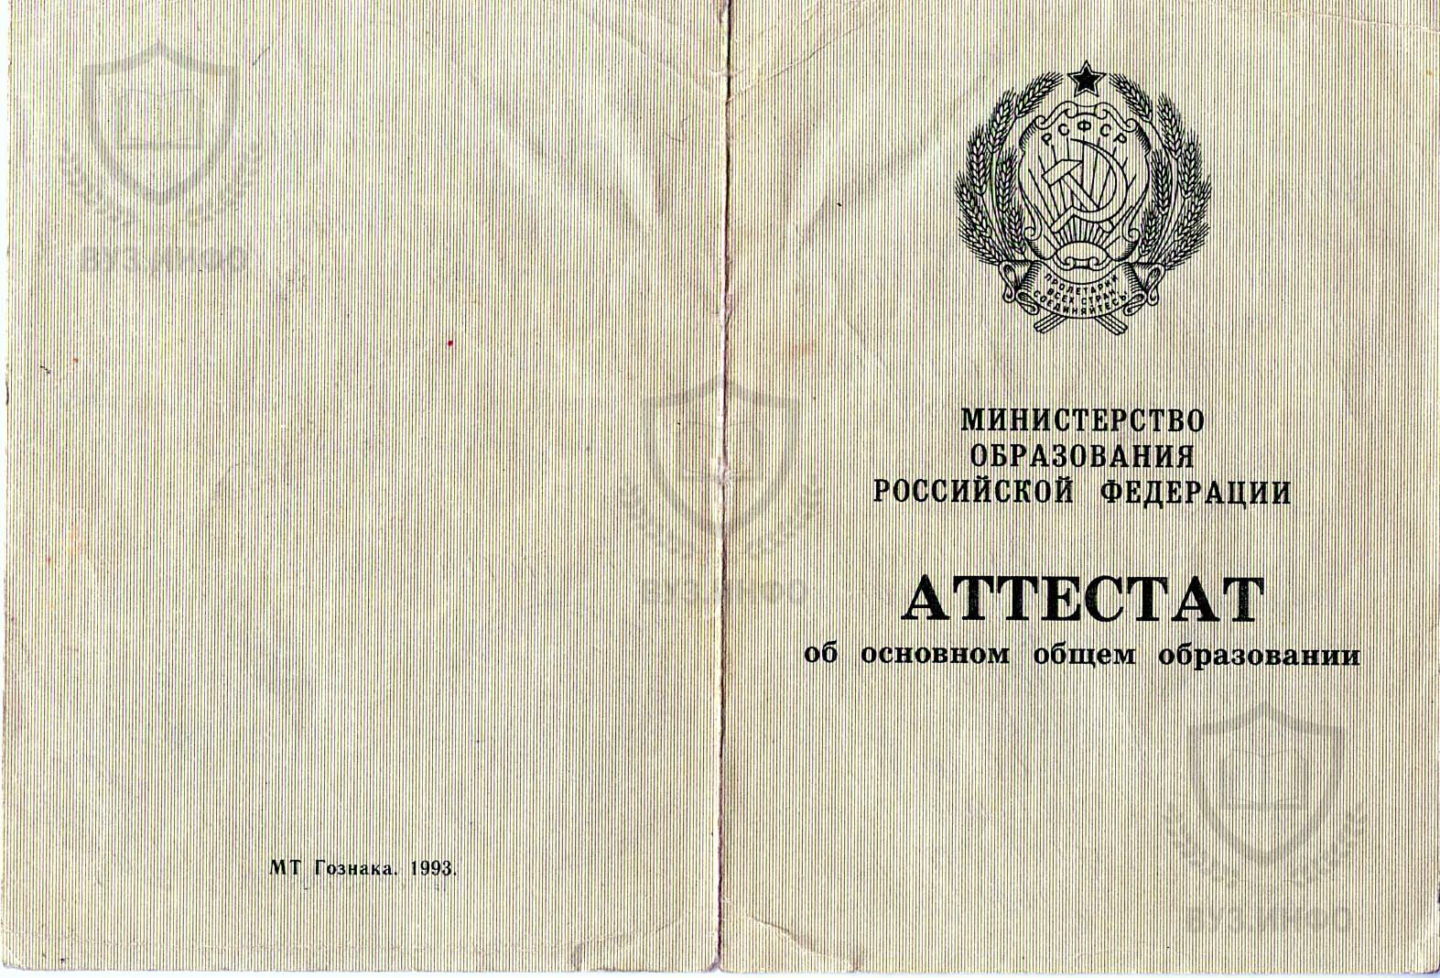 Внешний вид аттестата 1993 года школы 949 г. Москвы